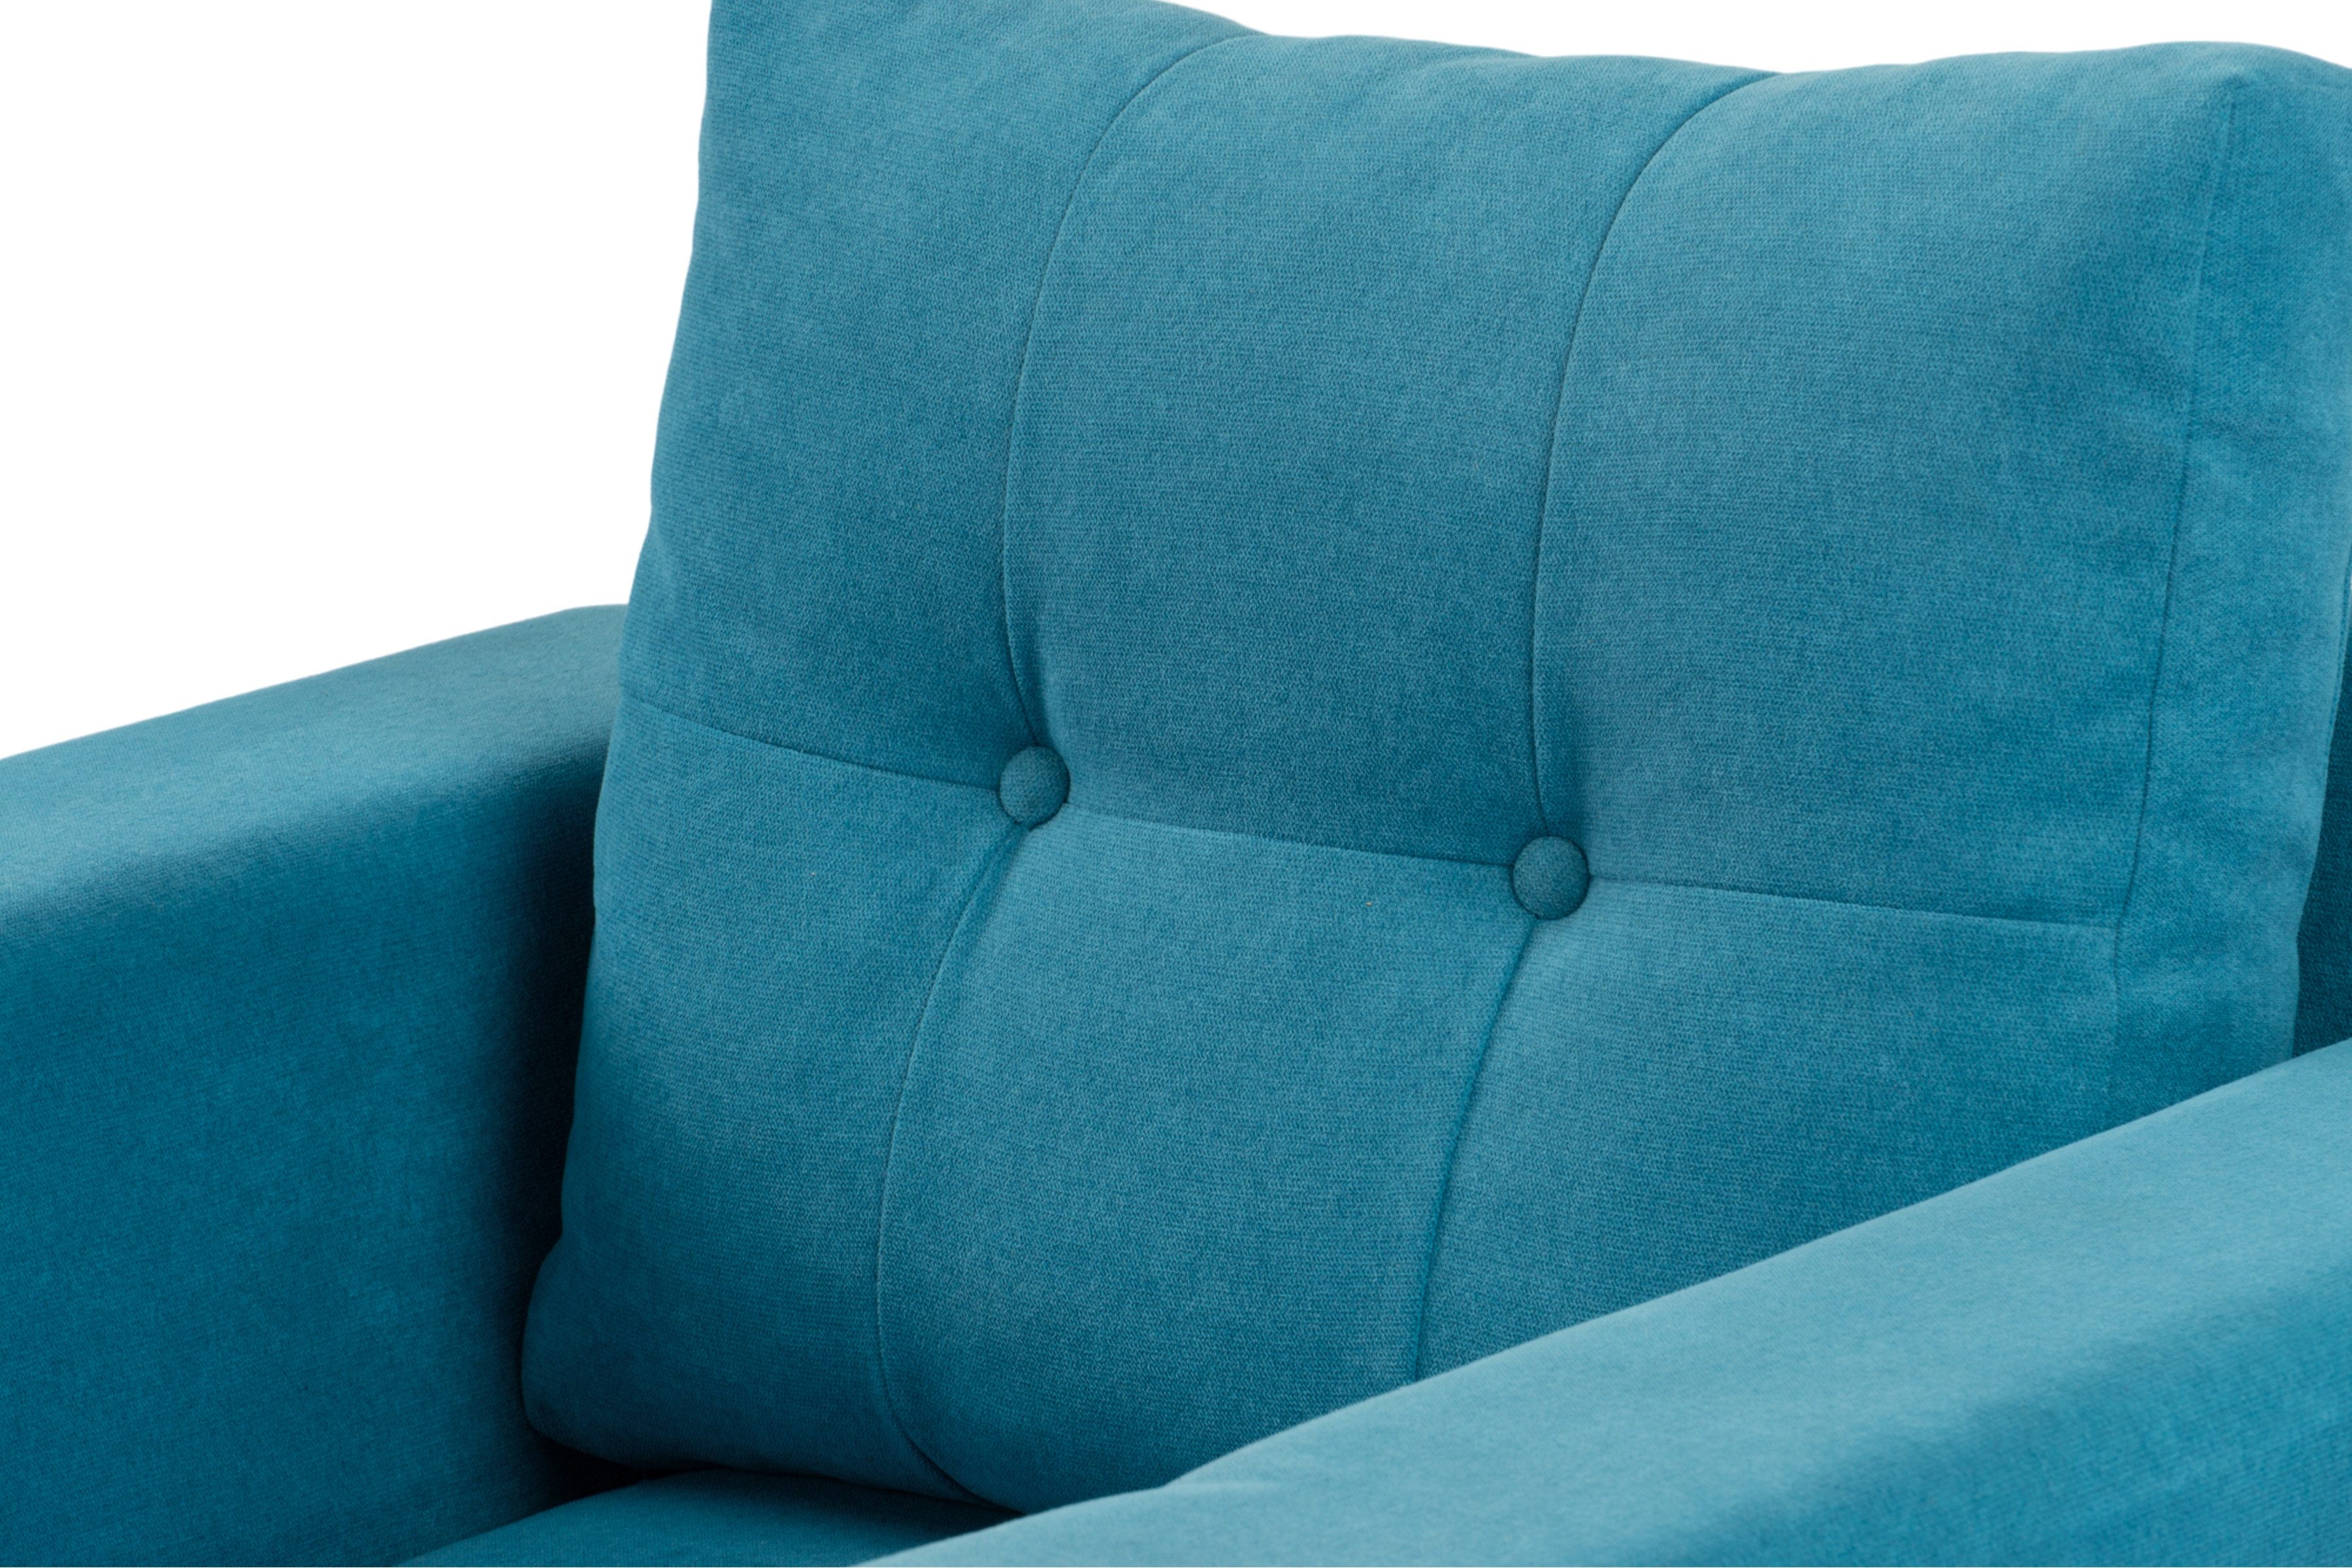 Fotel Penelope Slim- niebieski - tkanina aston niepikowany 19 Fotel Penelope Slim- niebieski - tkanina aston niepikowany 19